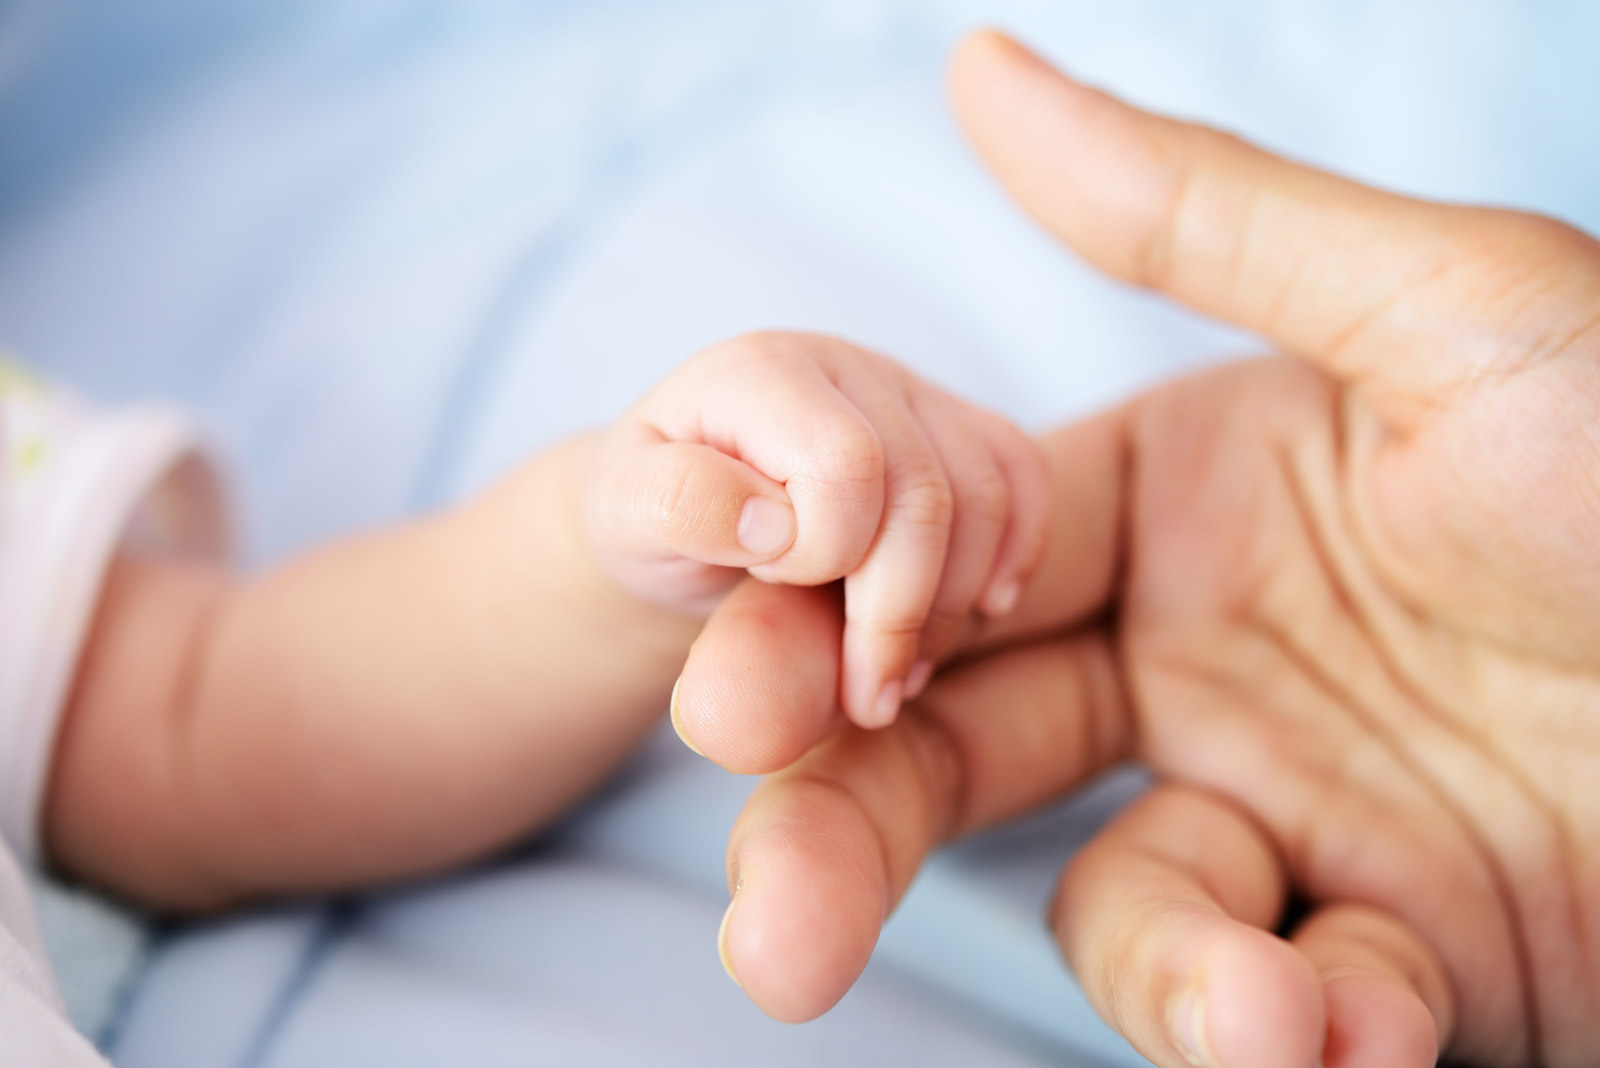 Newborn hand touching mother's hand